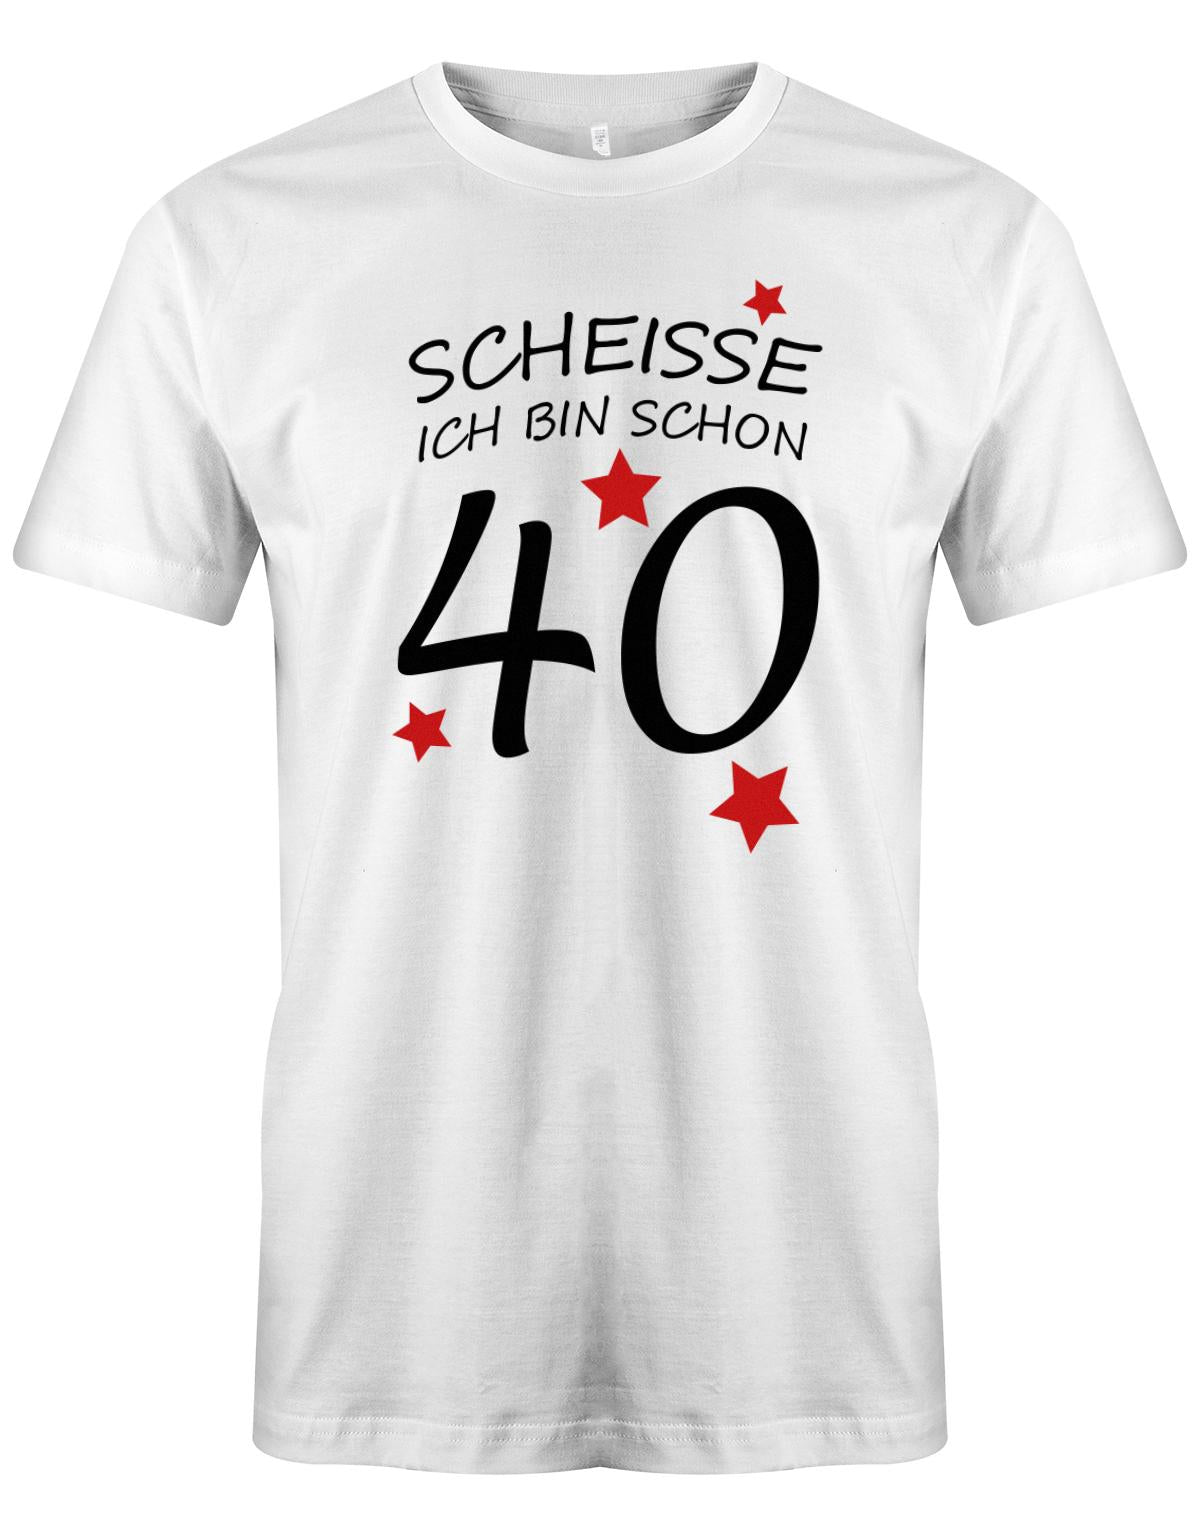 Scheisse ich bin schon 40 - T-Shirt 40 Geburtstag Männer - TShirt 1983 myShirtStore Weiss